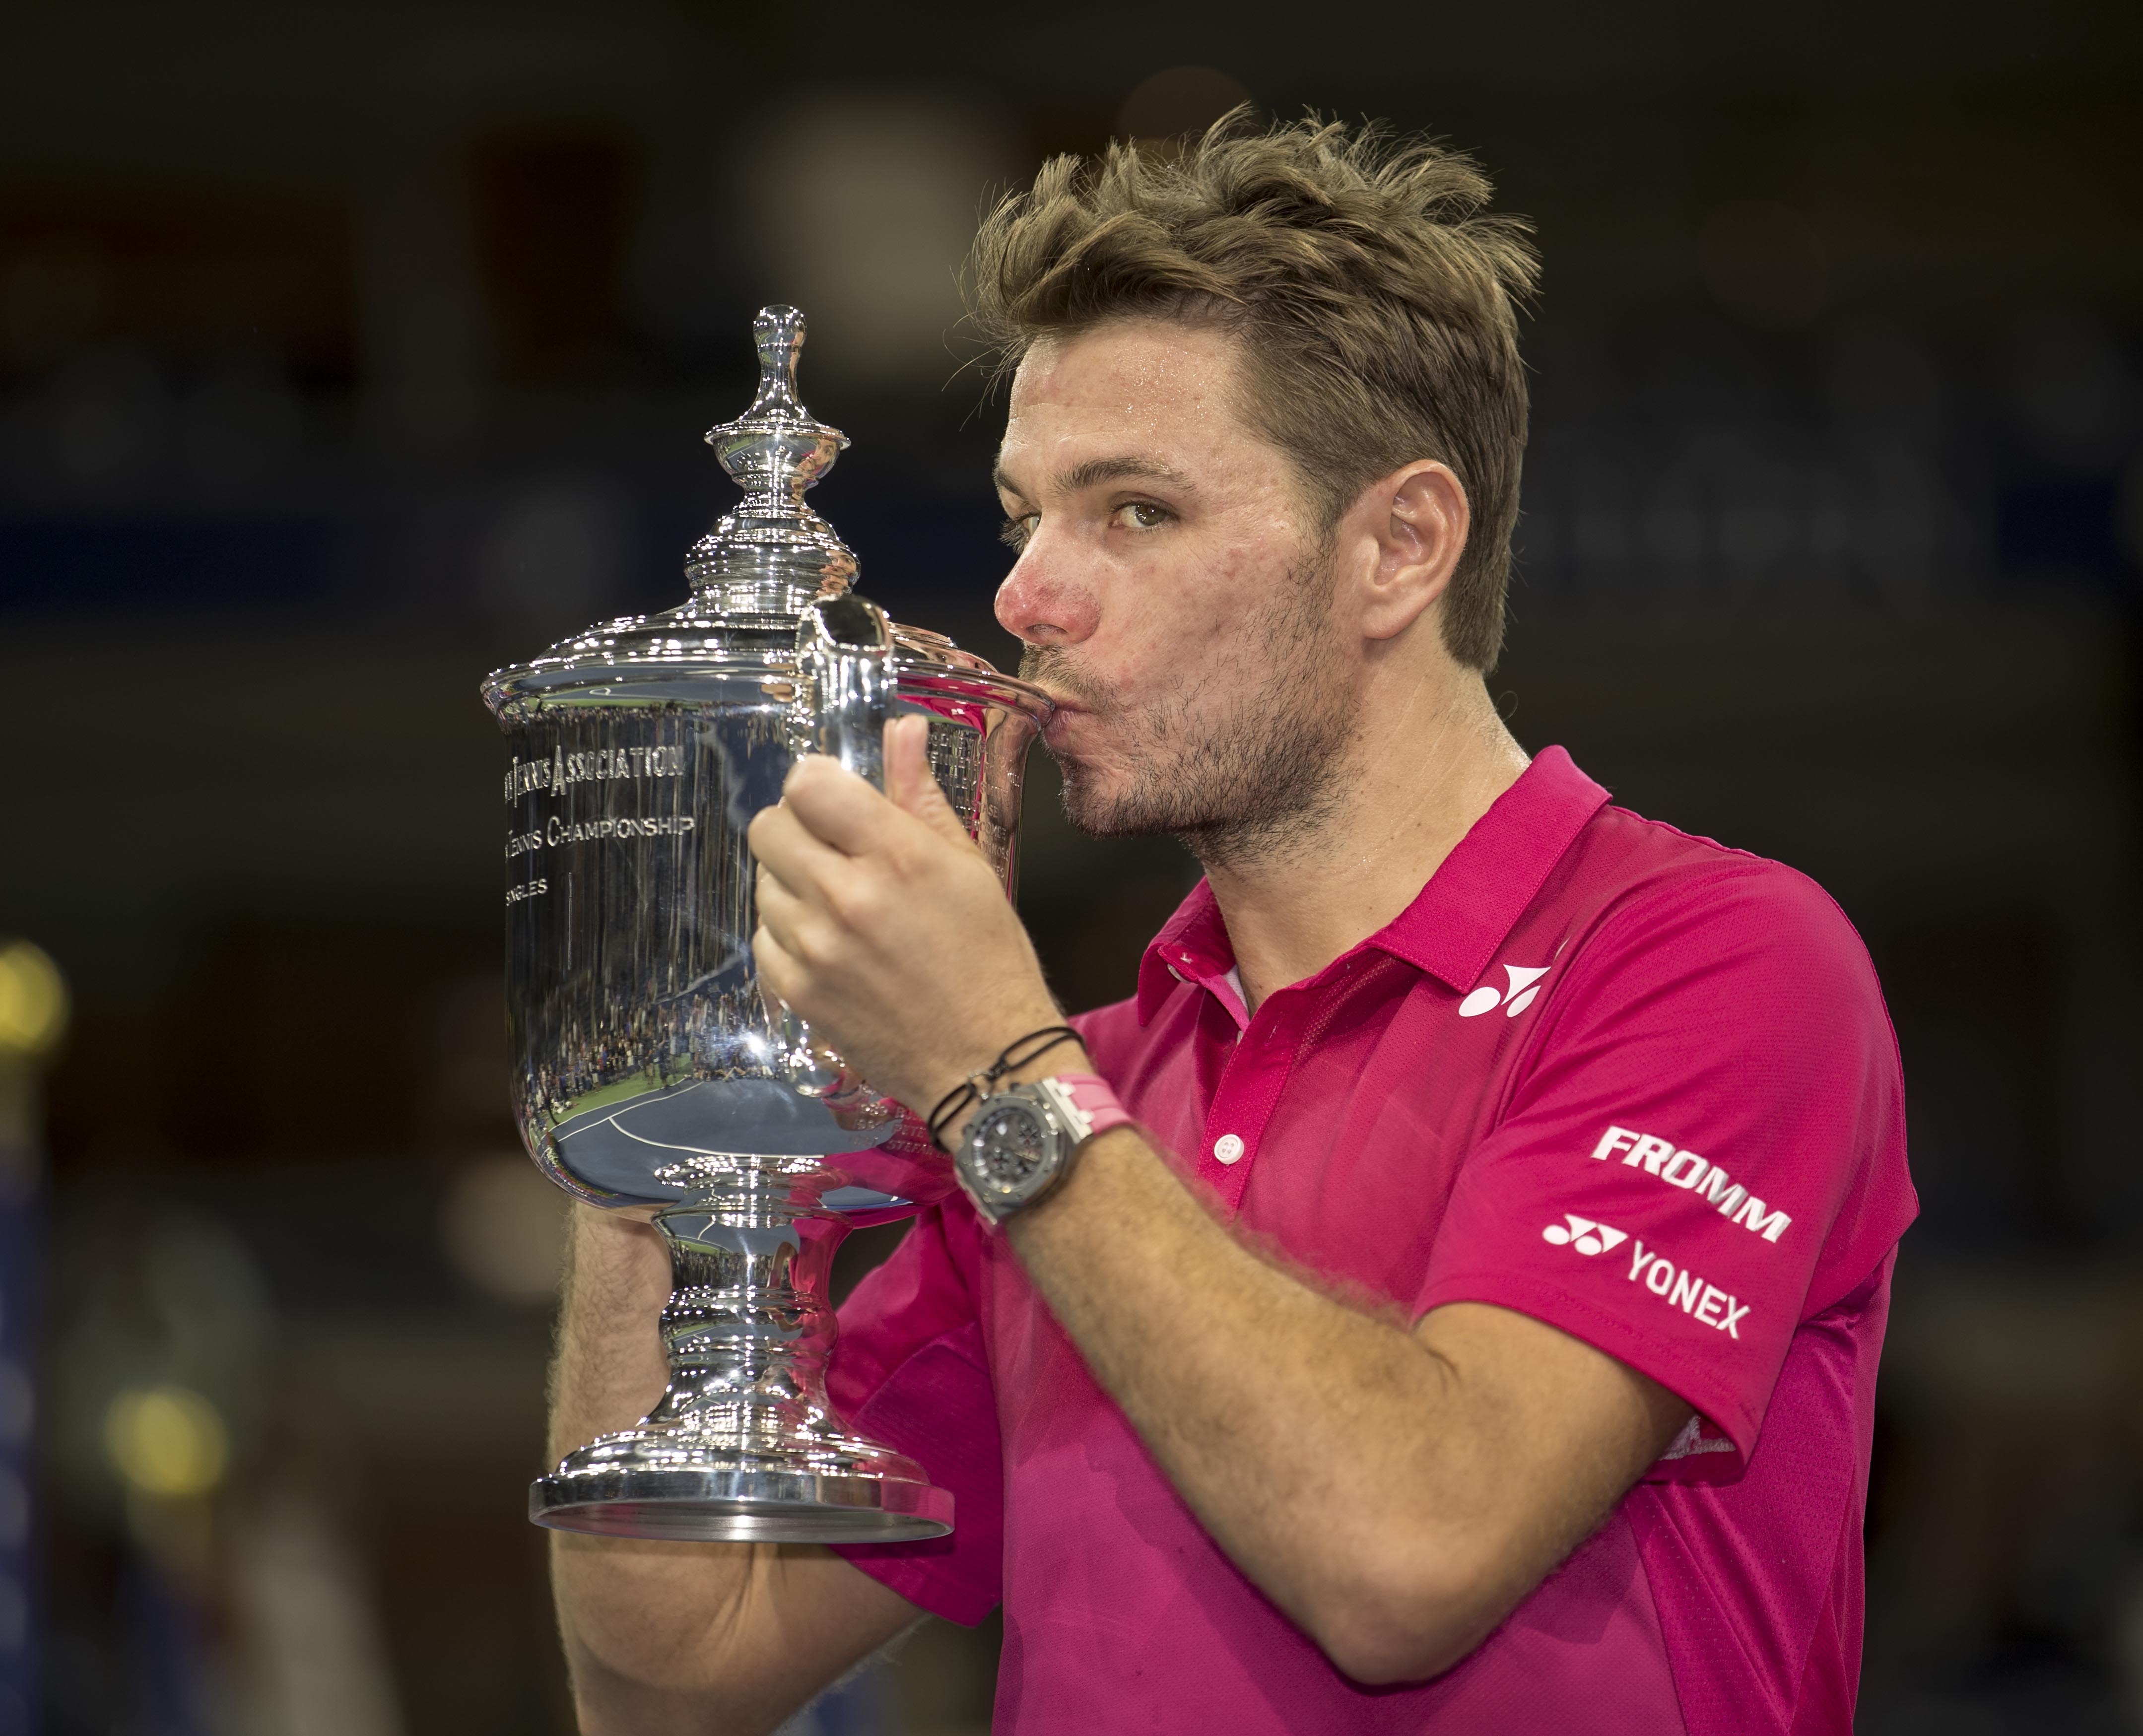 El suizo Wawrinka destrona a Djokovic y gana el US Open 2016 de tenis